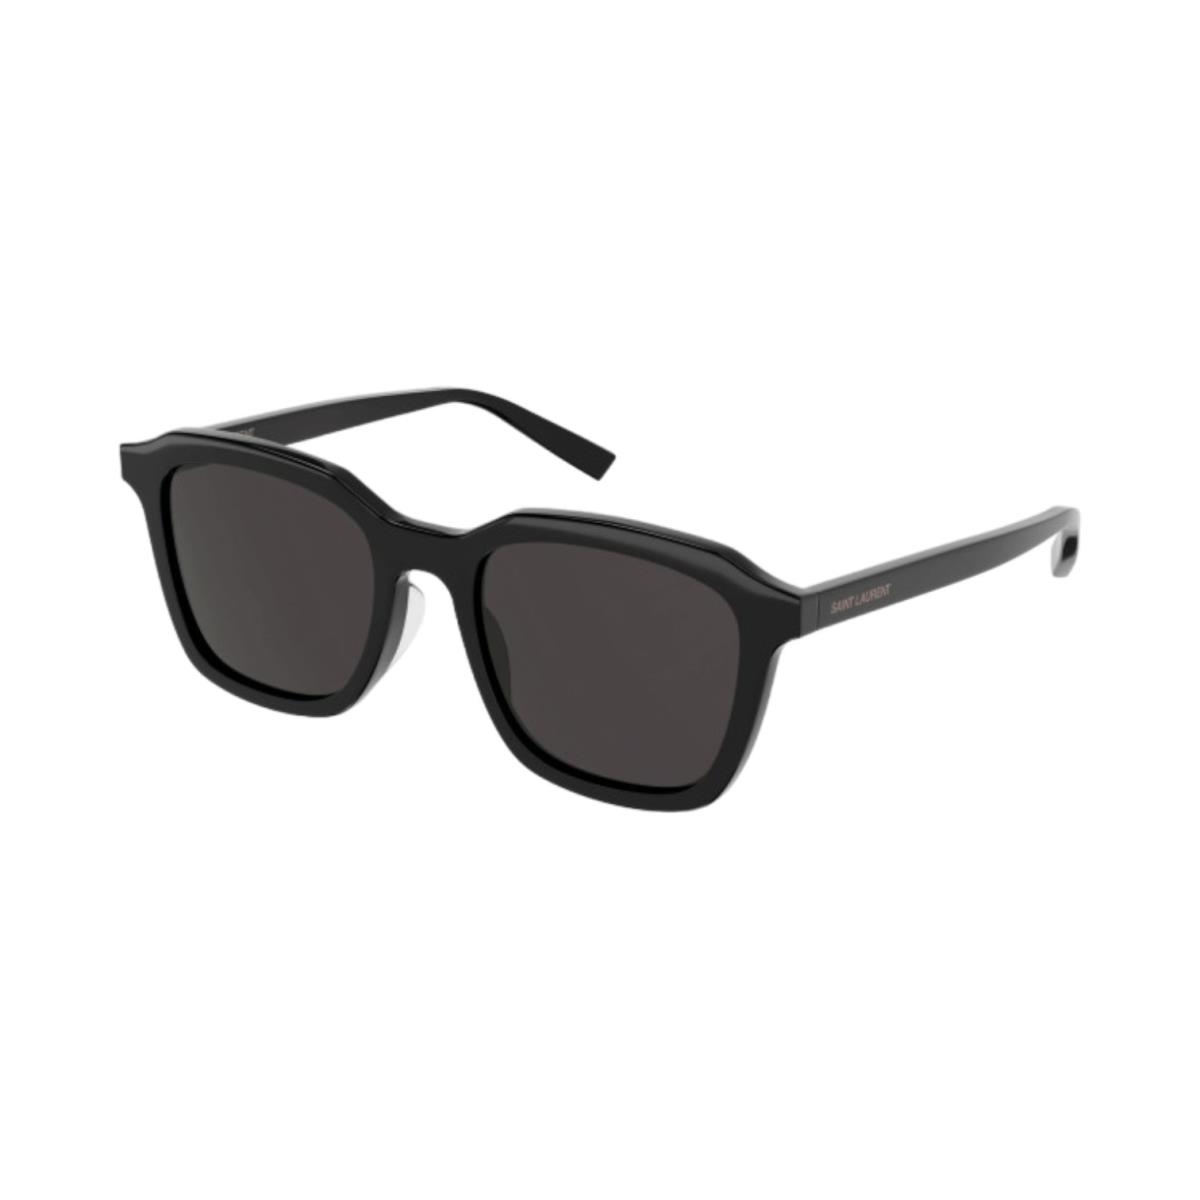 Unisex Saint Laurent SL 457 Sunglasses - Black Frame Black Shiny Lenses